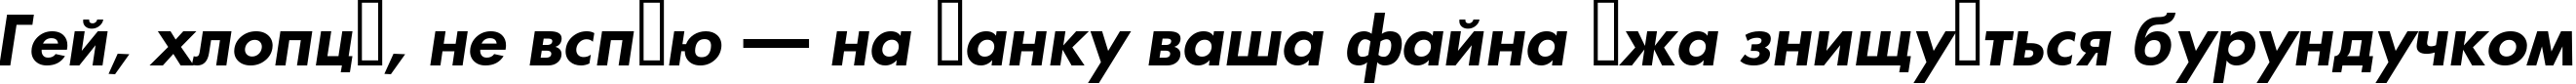 Пример написания шрифтом a_FuturicaBs BoldItalic текста на украинском